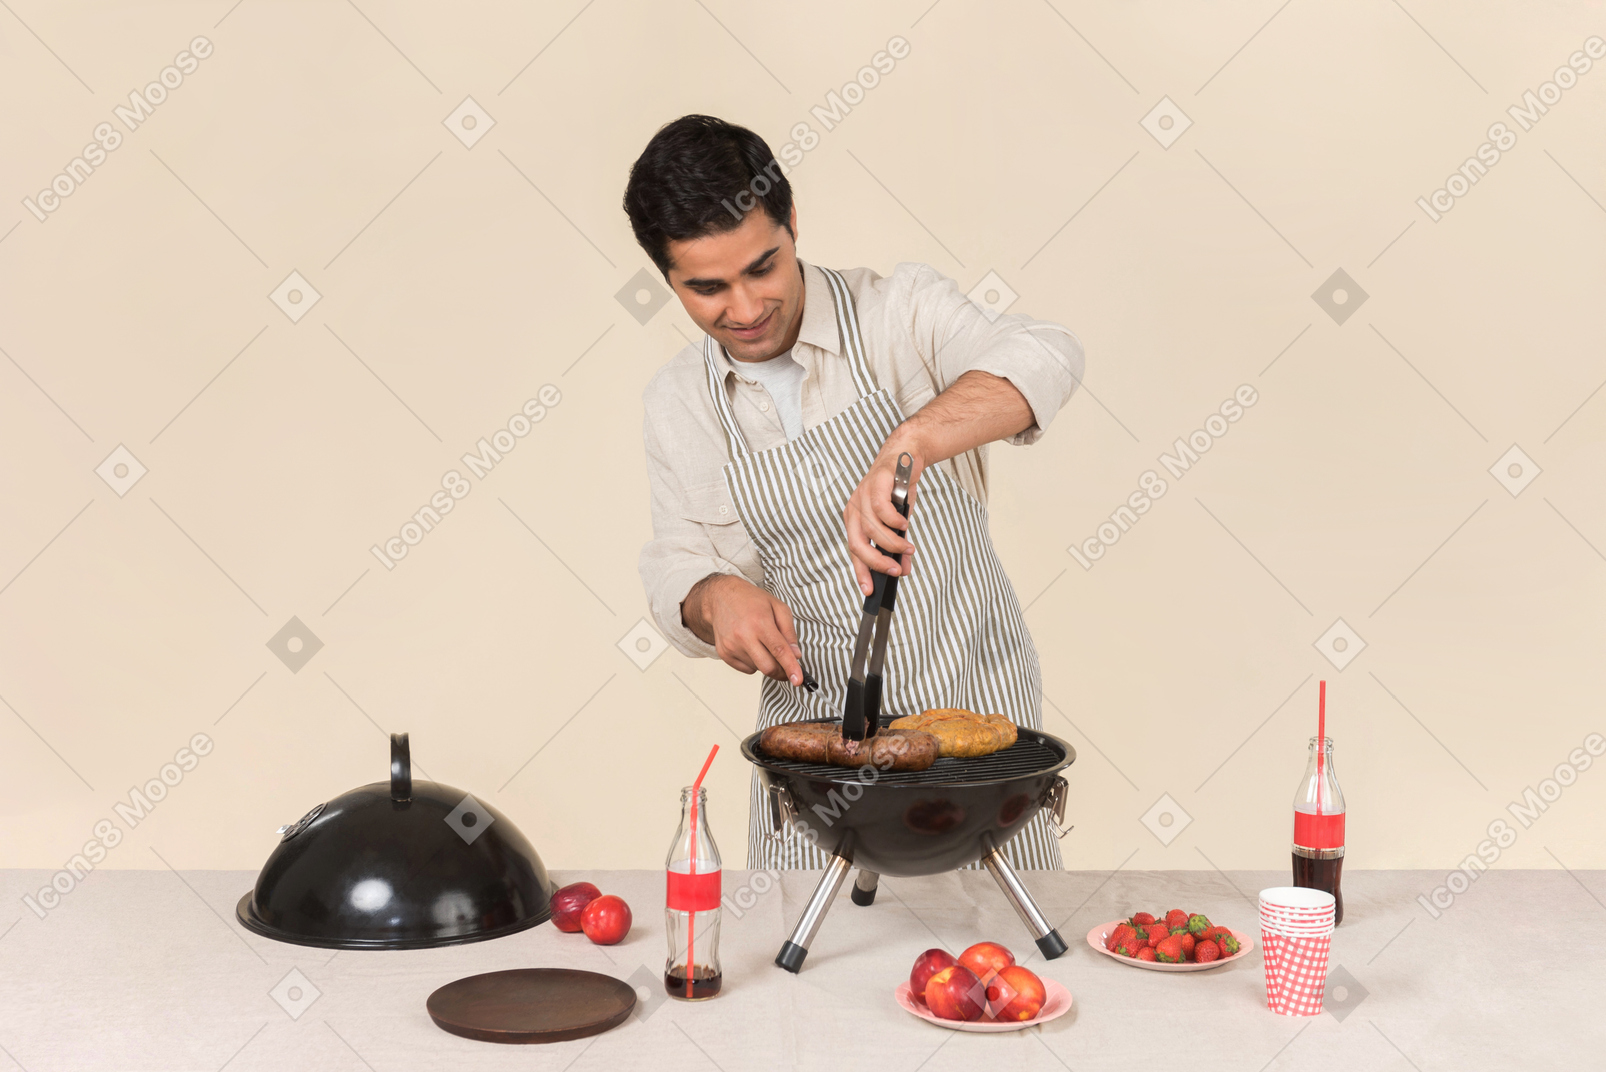 Jeune homme de race blanche concentré sur la cuisson barbecue